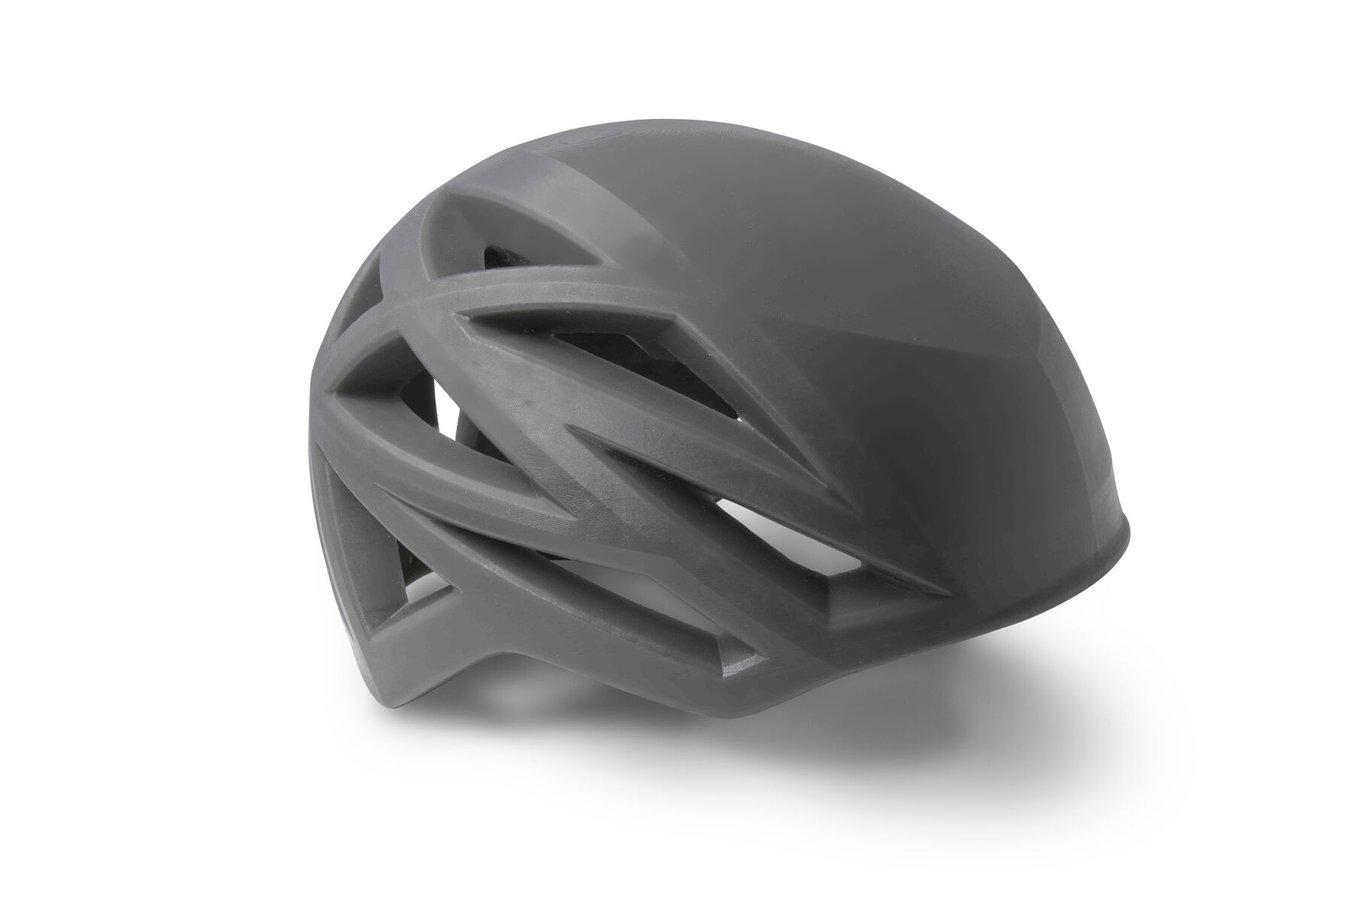 3D Printed helmet prototype